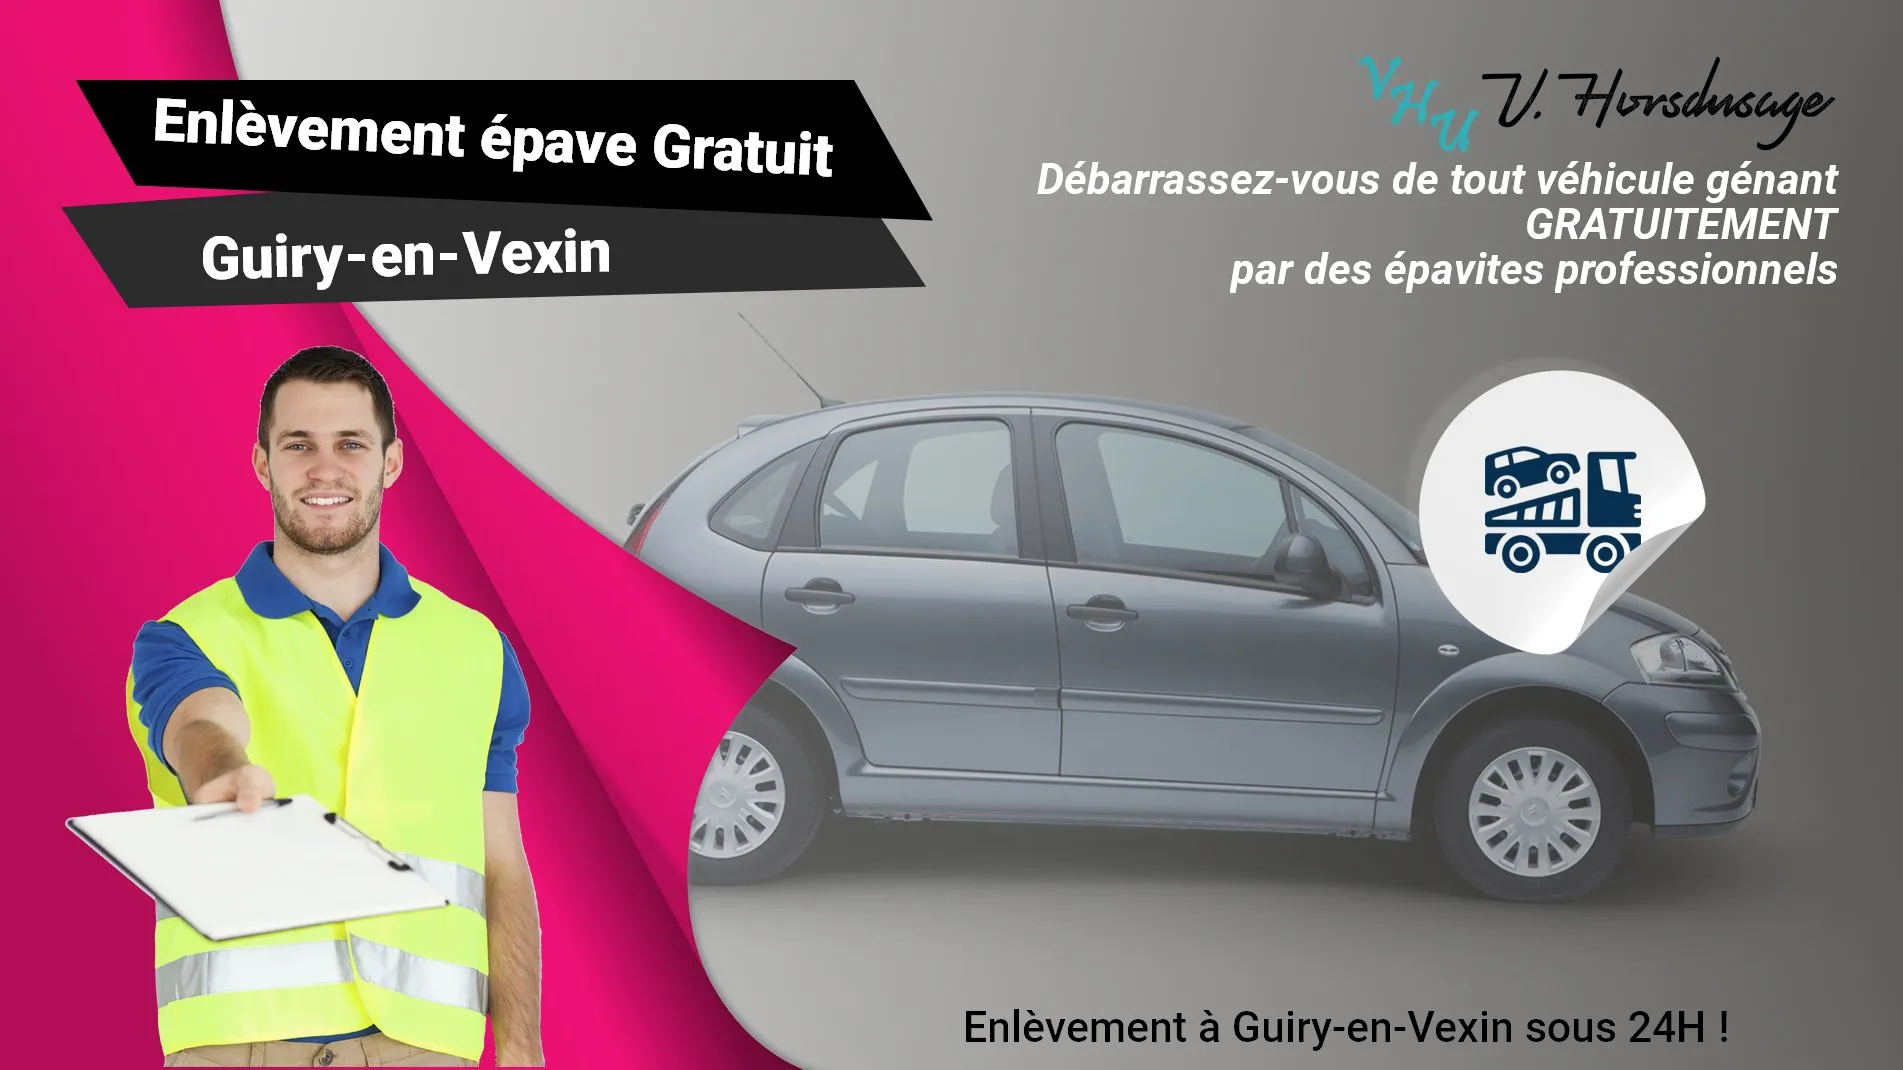 Pour un enlèvement gratuit à Guiry-en-Vexin, contactez nos épavistes agréé VHU